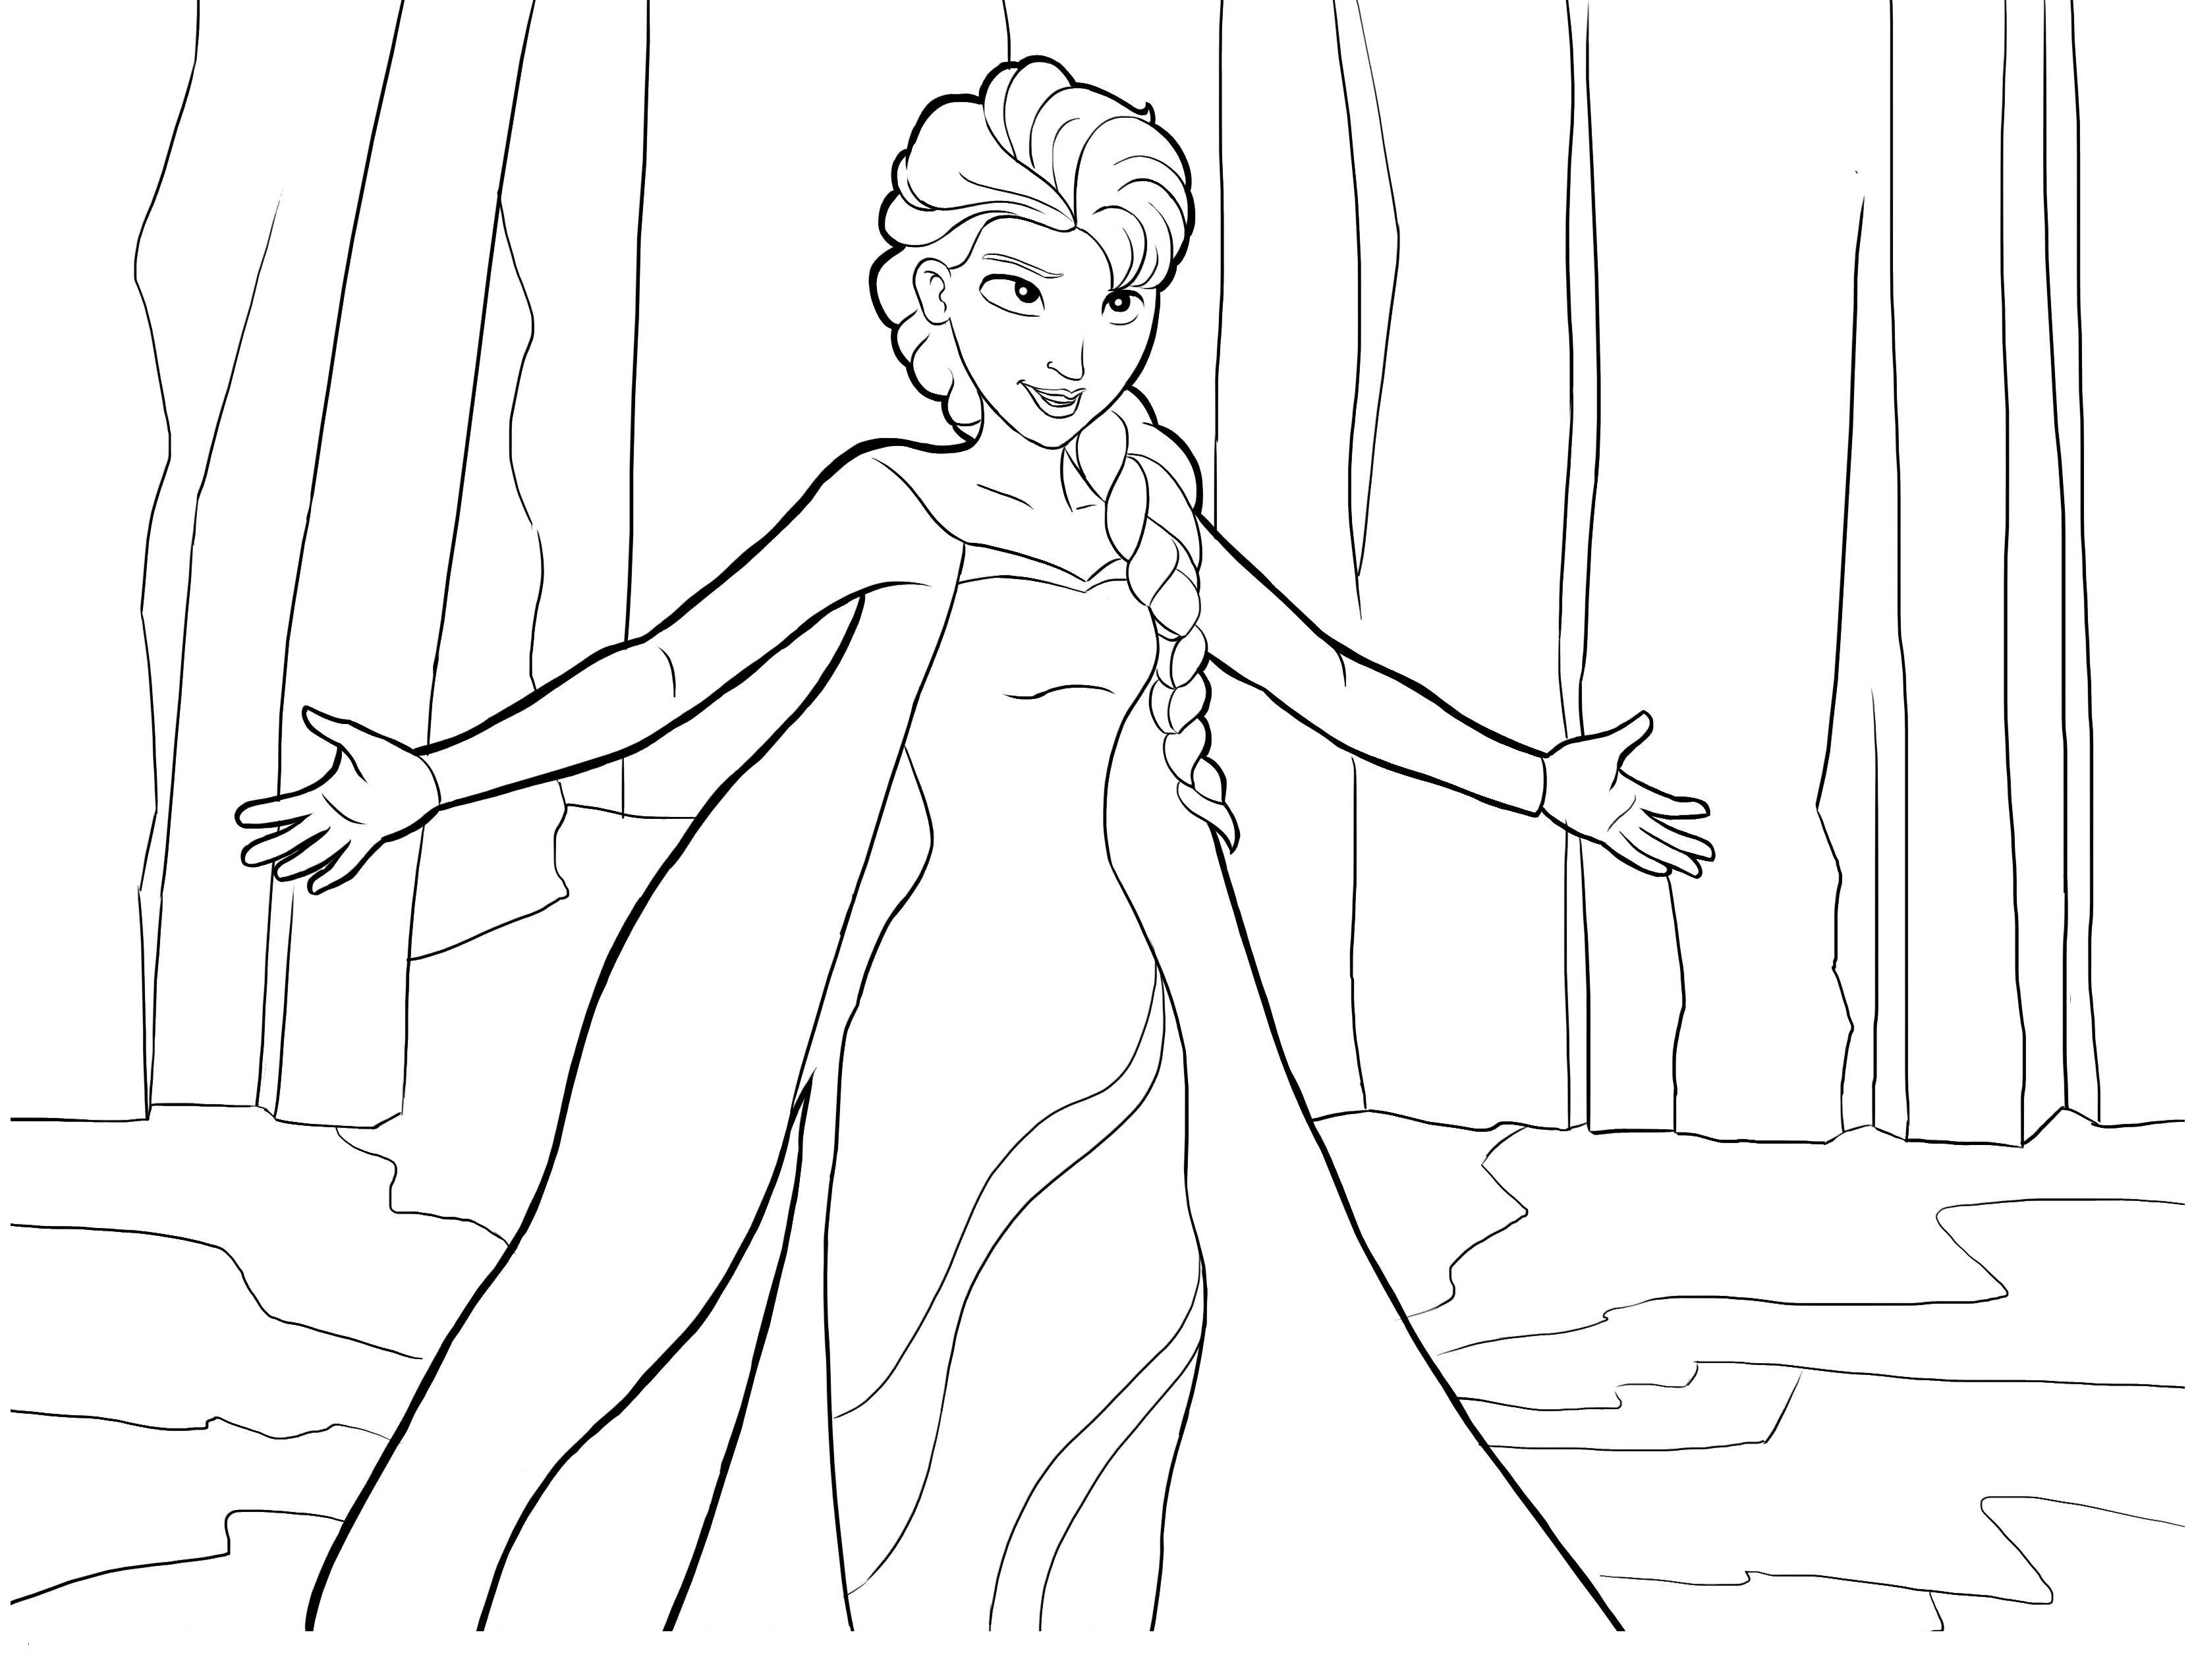 Simple Dibujos para colorear de Frozen (el Reino Del Hielo)